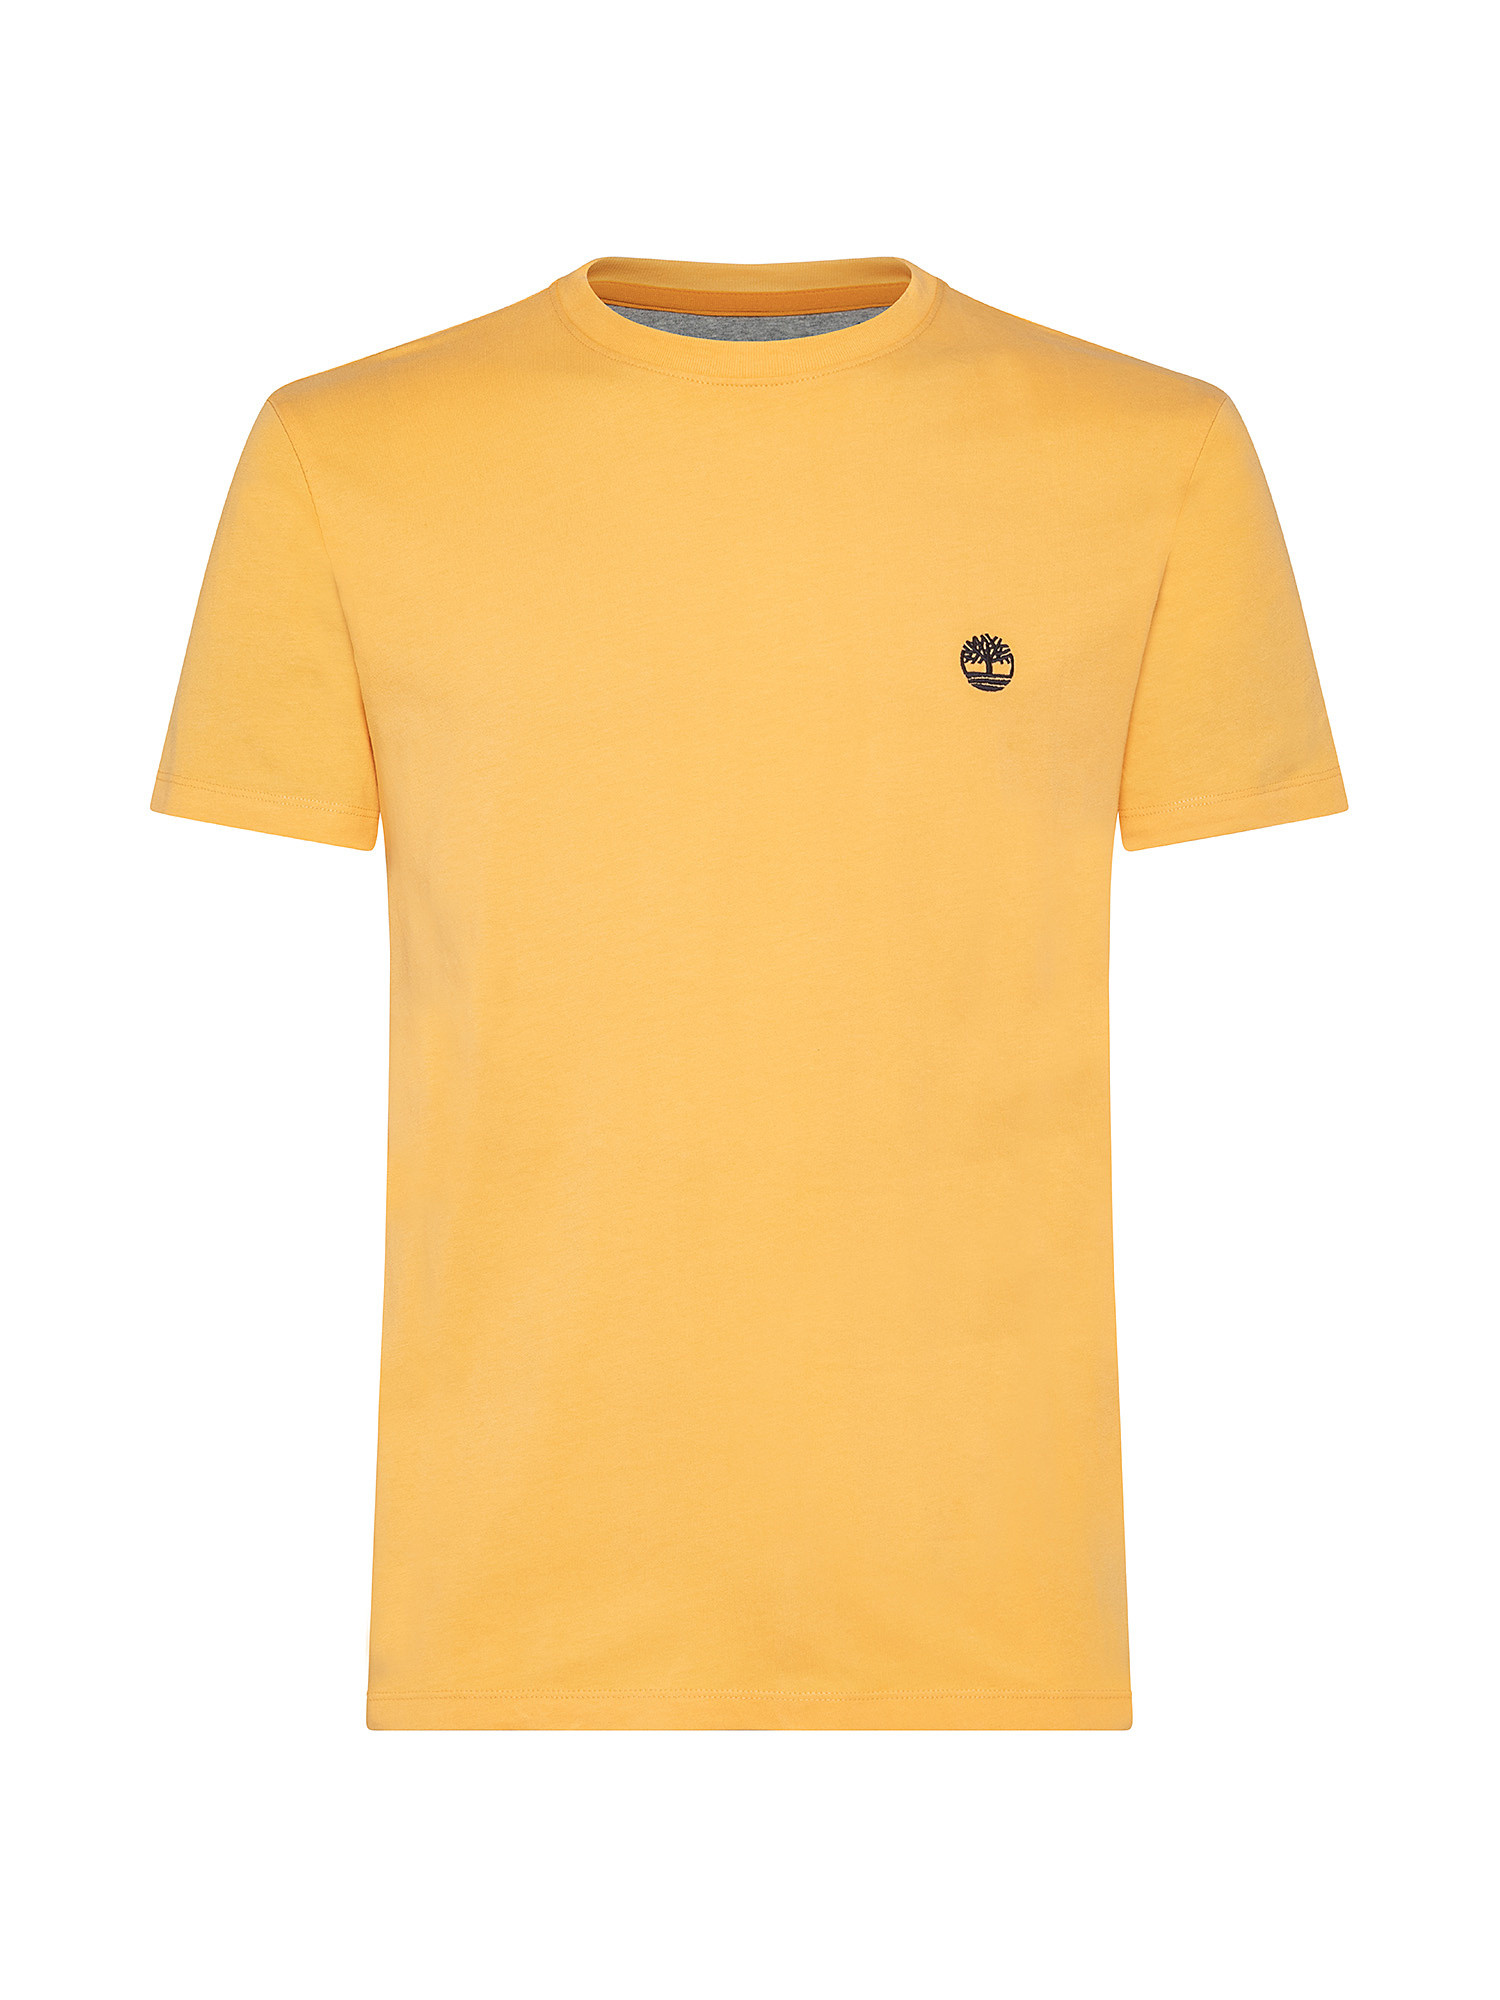 T-shirt da Uomo Dunstan River, Arancione, large